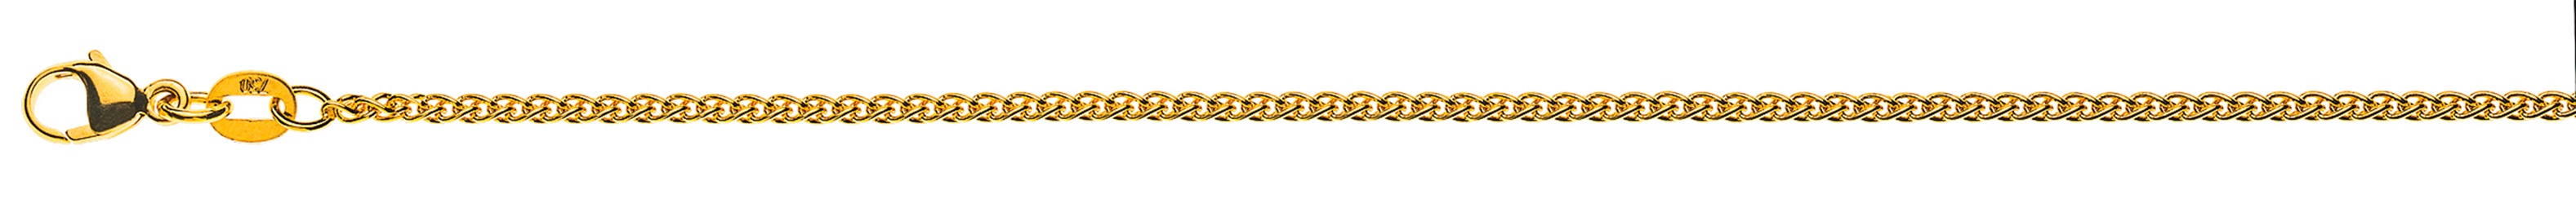 AURONOS Style Halskette Gelbgold 9K Zopfkette 42cm 1.65mm